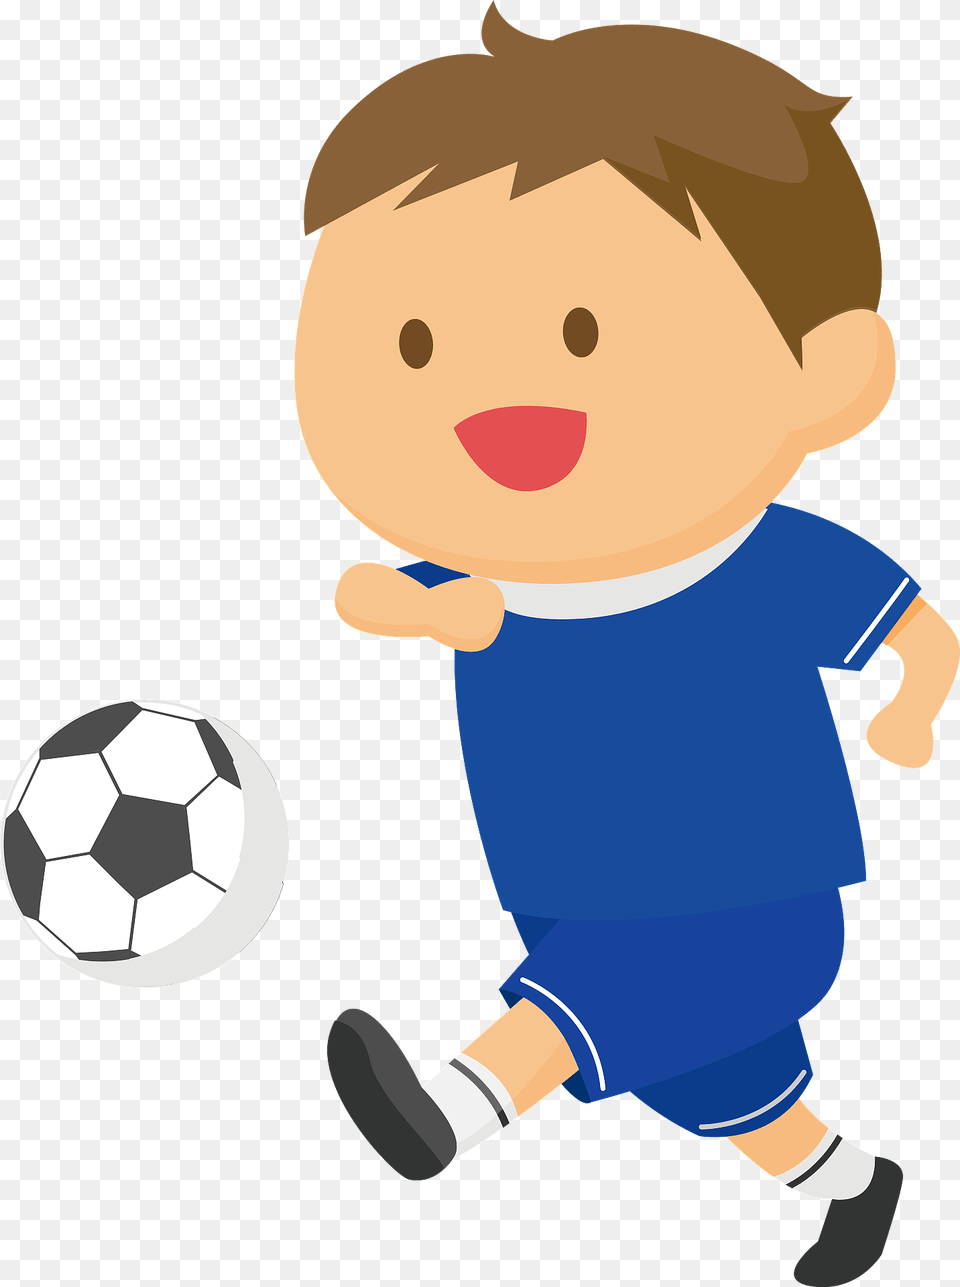 Soccer Boy Clipart, Ball, Football, Soccer Ball, Sport Free Png